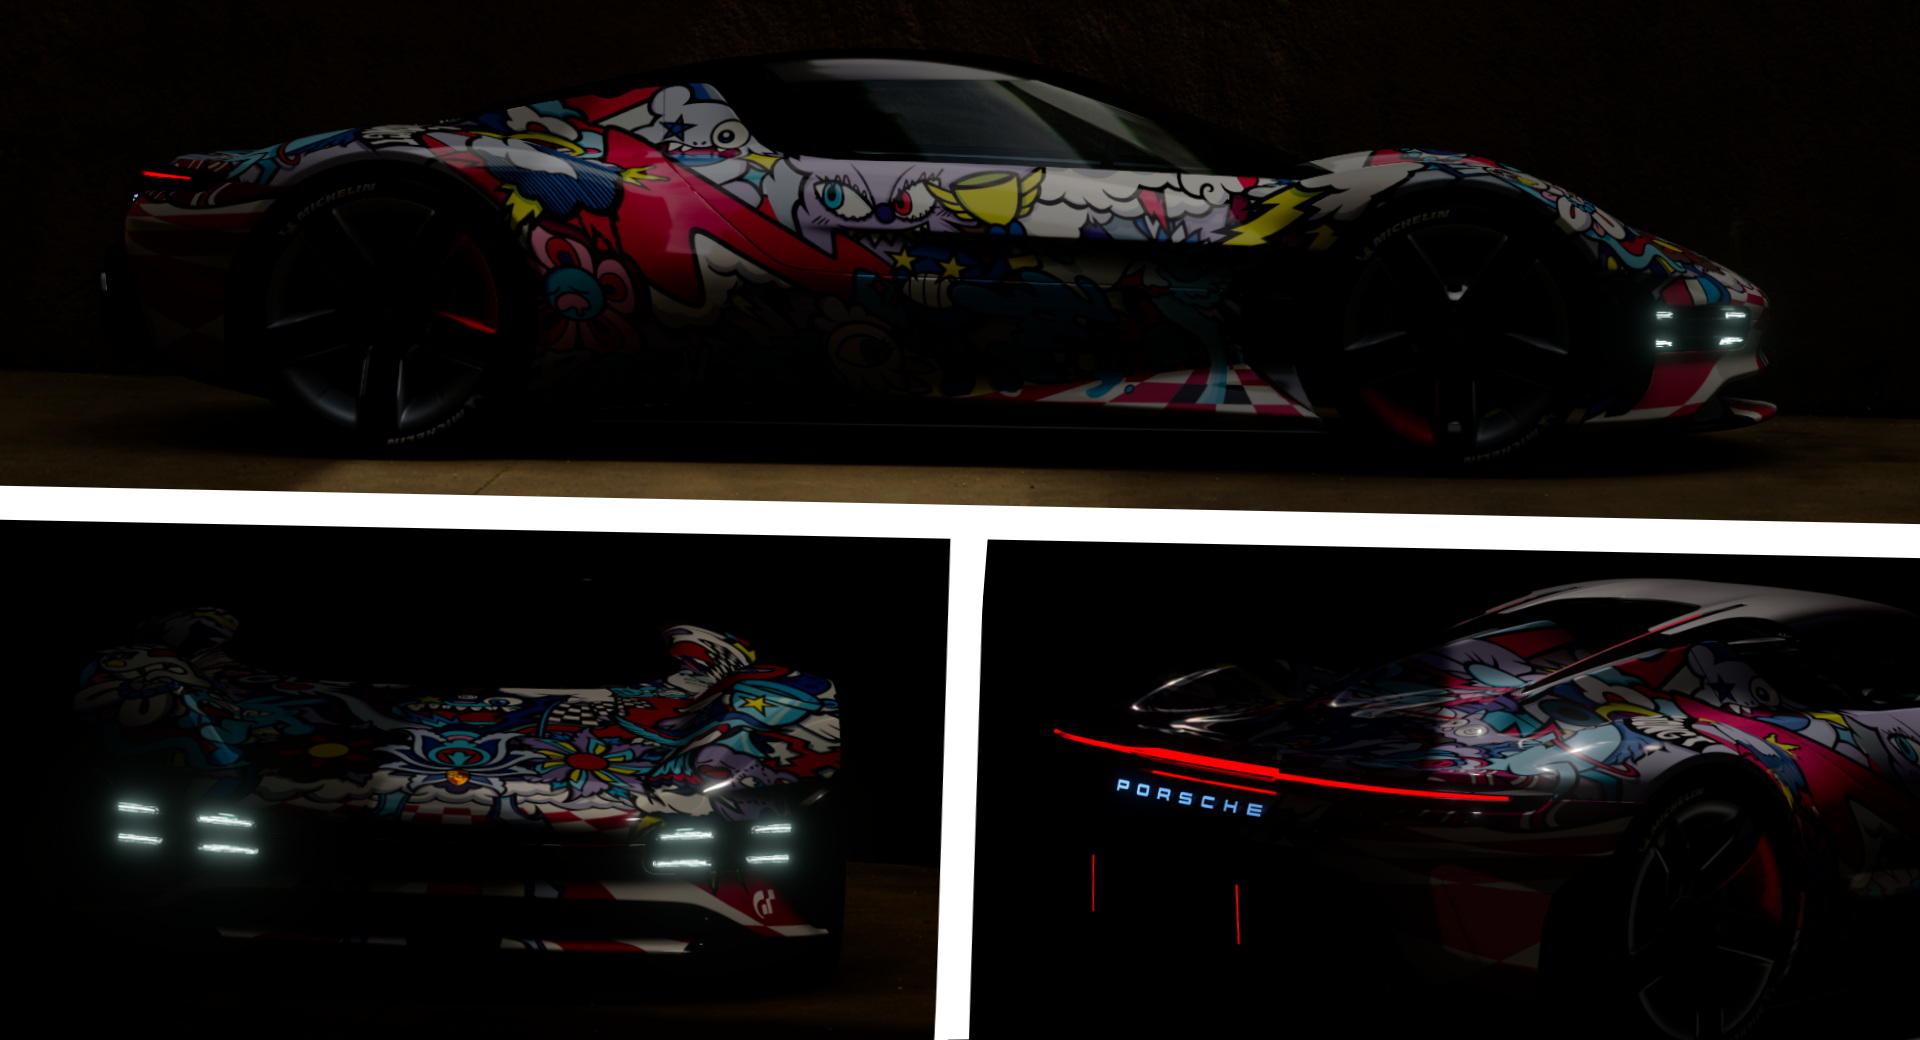 Le concept Porsche Vision GT aura une nouvelle livrée inspirée du street art